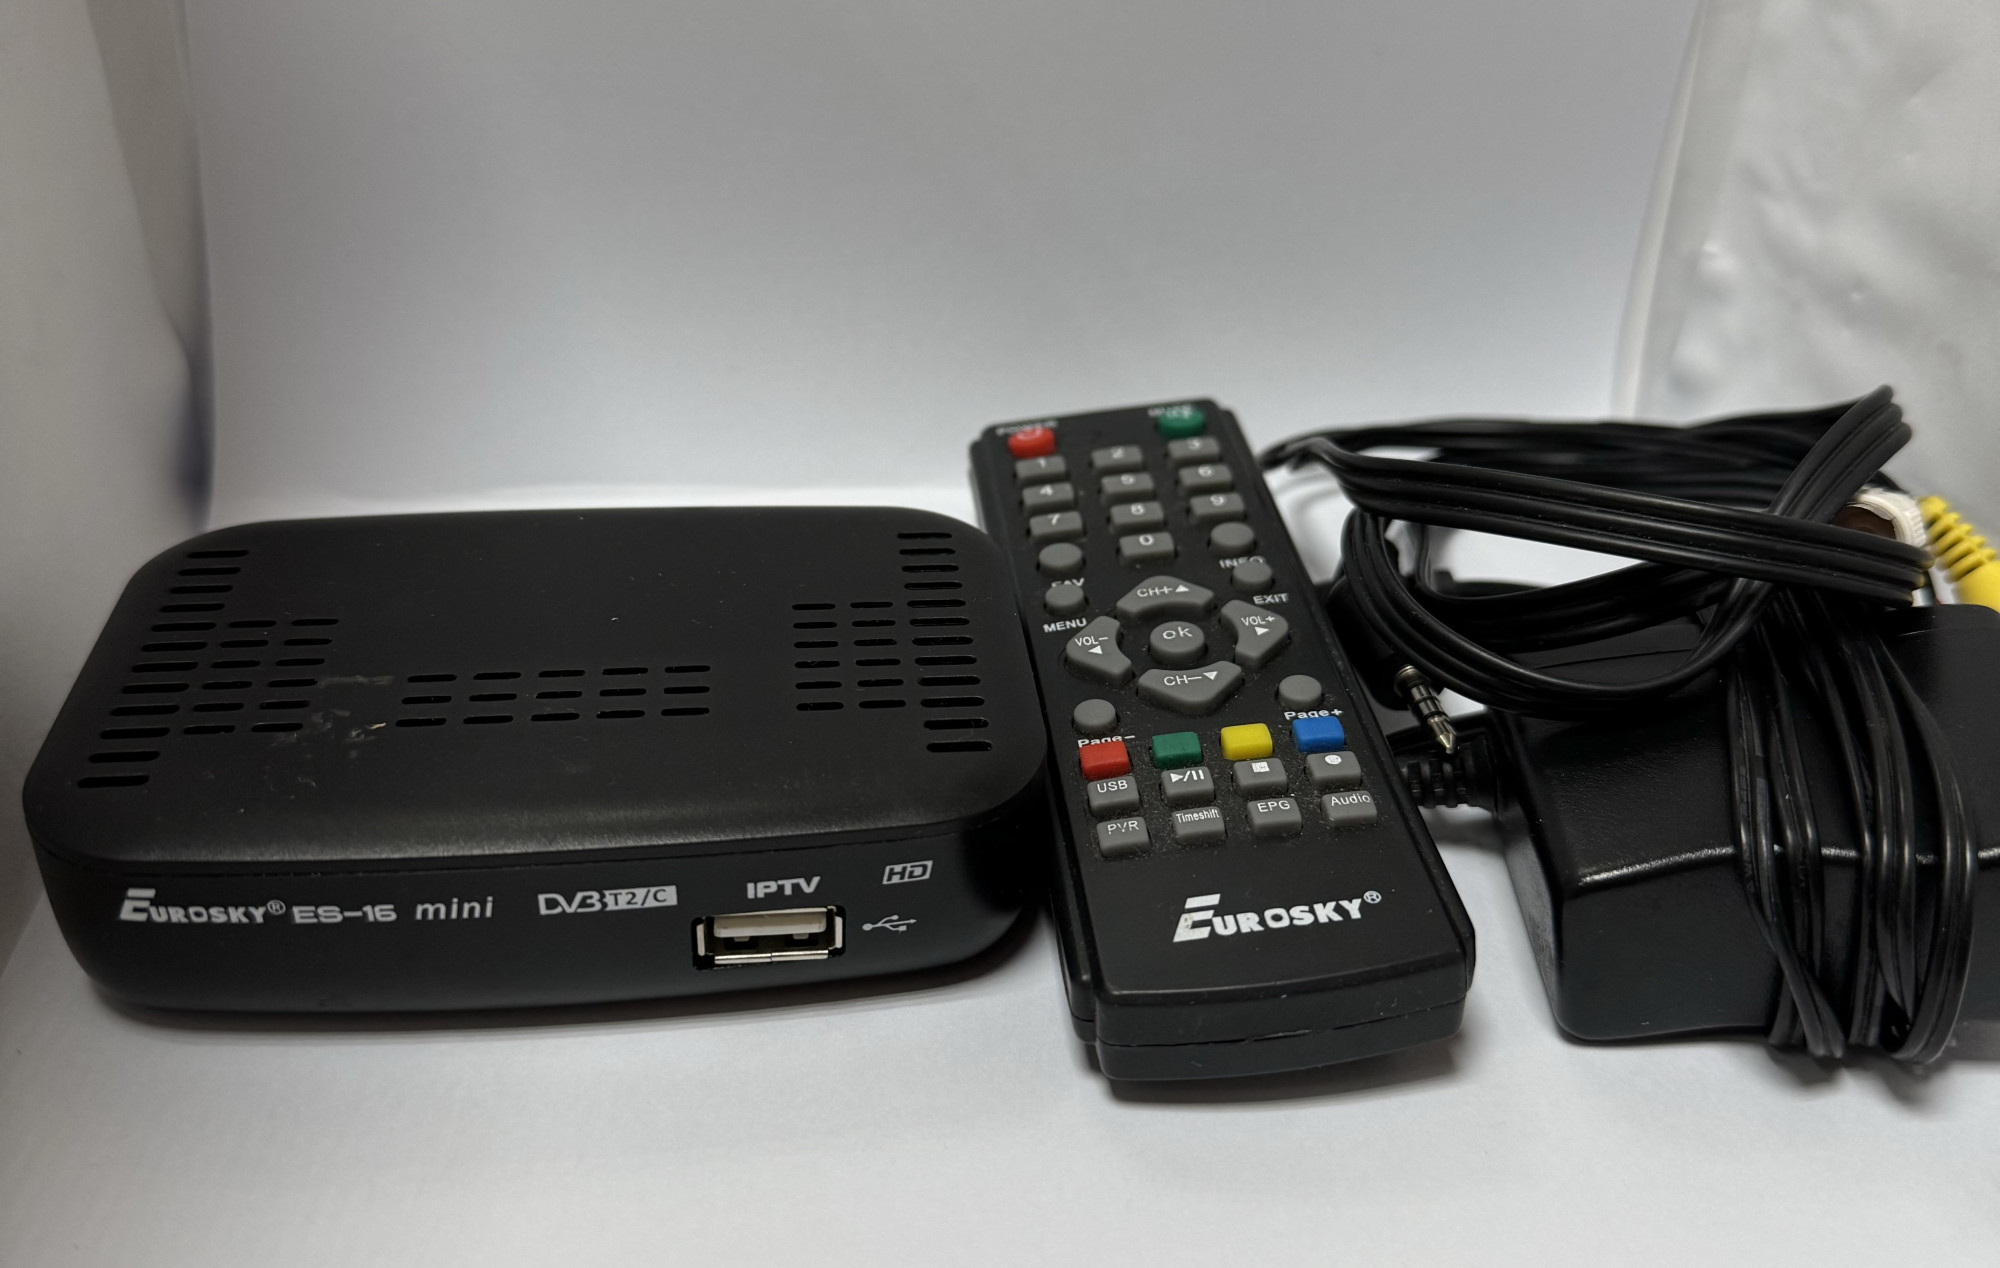 Цифровой эфирный ресивер Eurosky ES-16 Mini DVB-T2 2